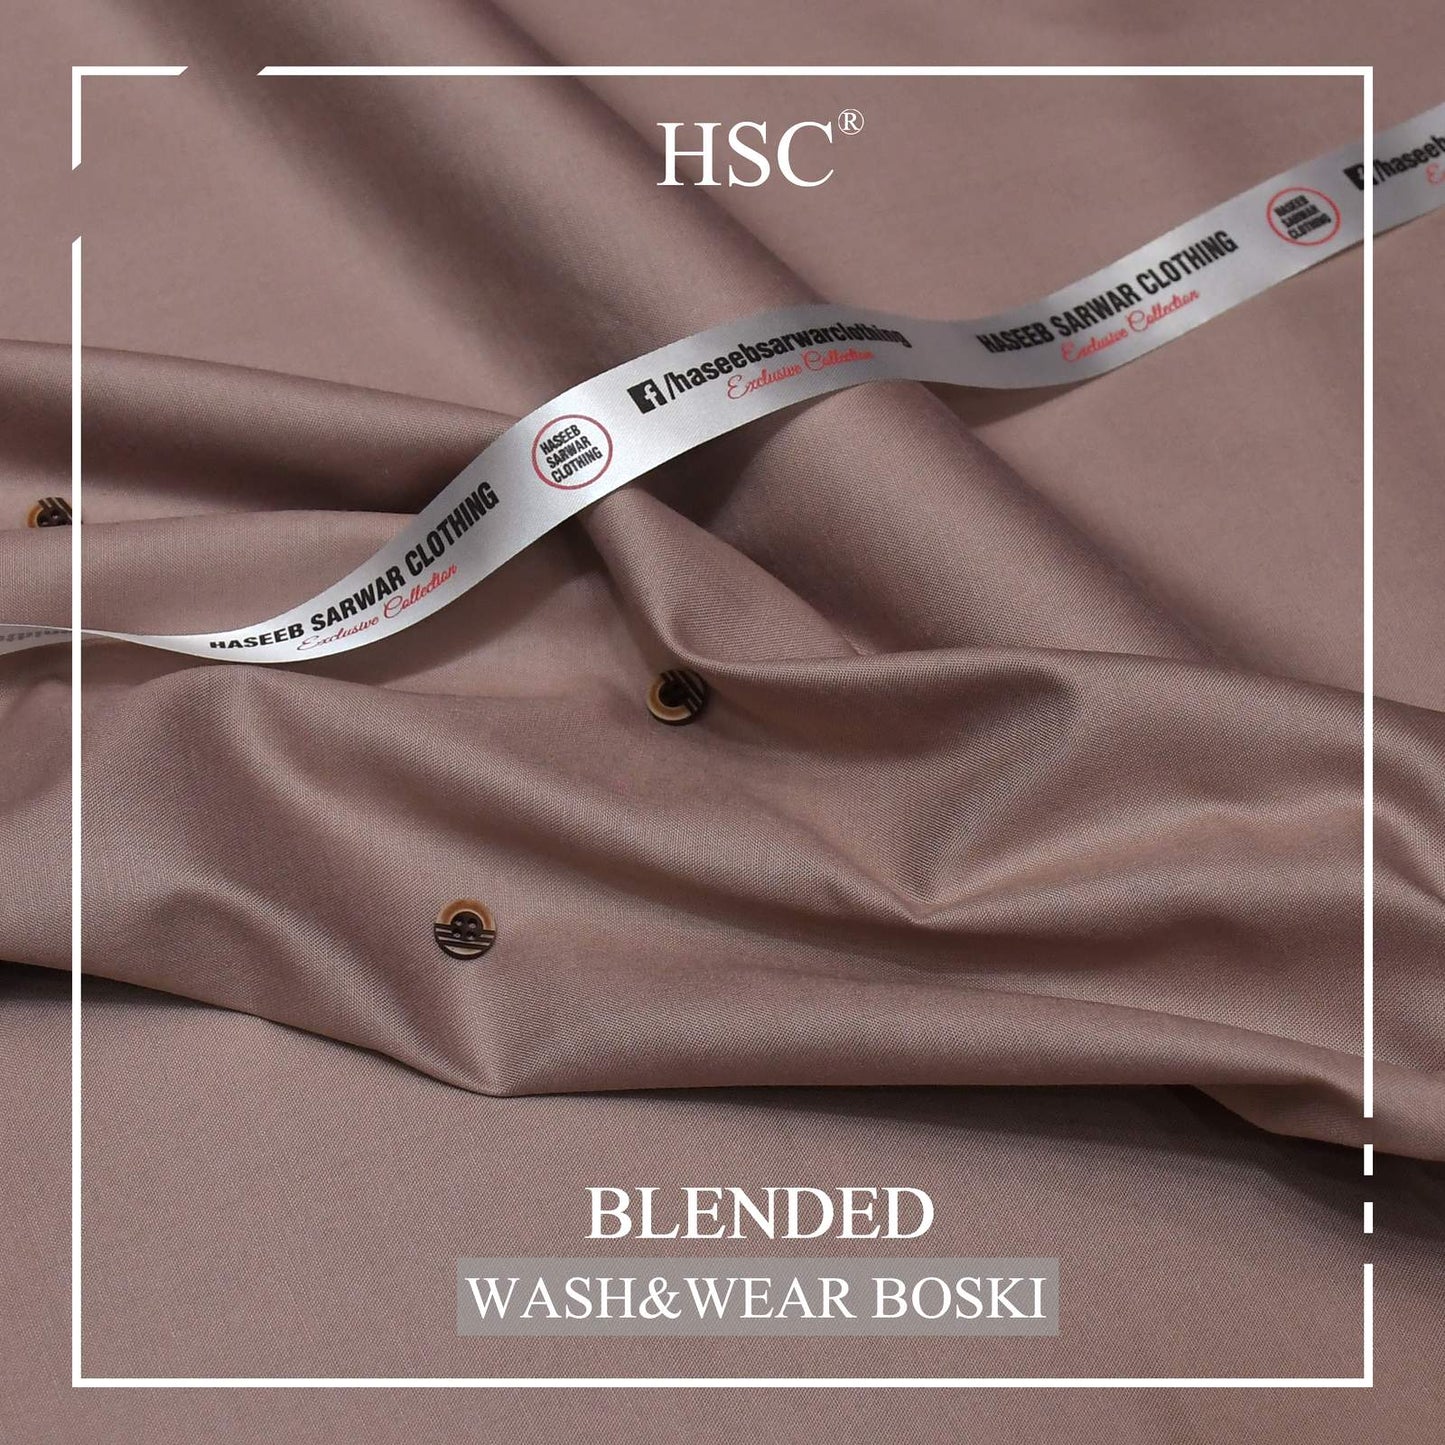 Blended Wash&Wear Boski (Buy 1 Get 1 Free Offer!) - WB4 HSC